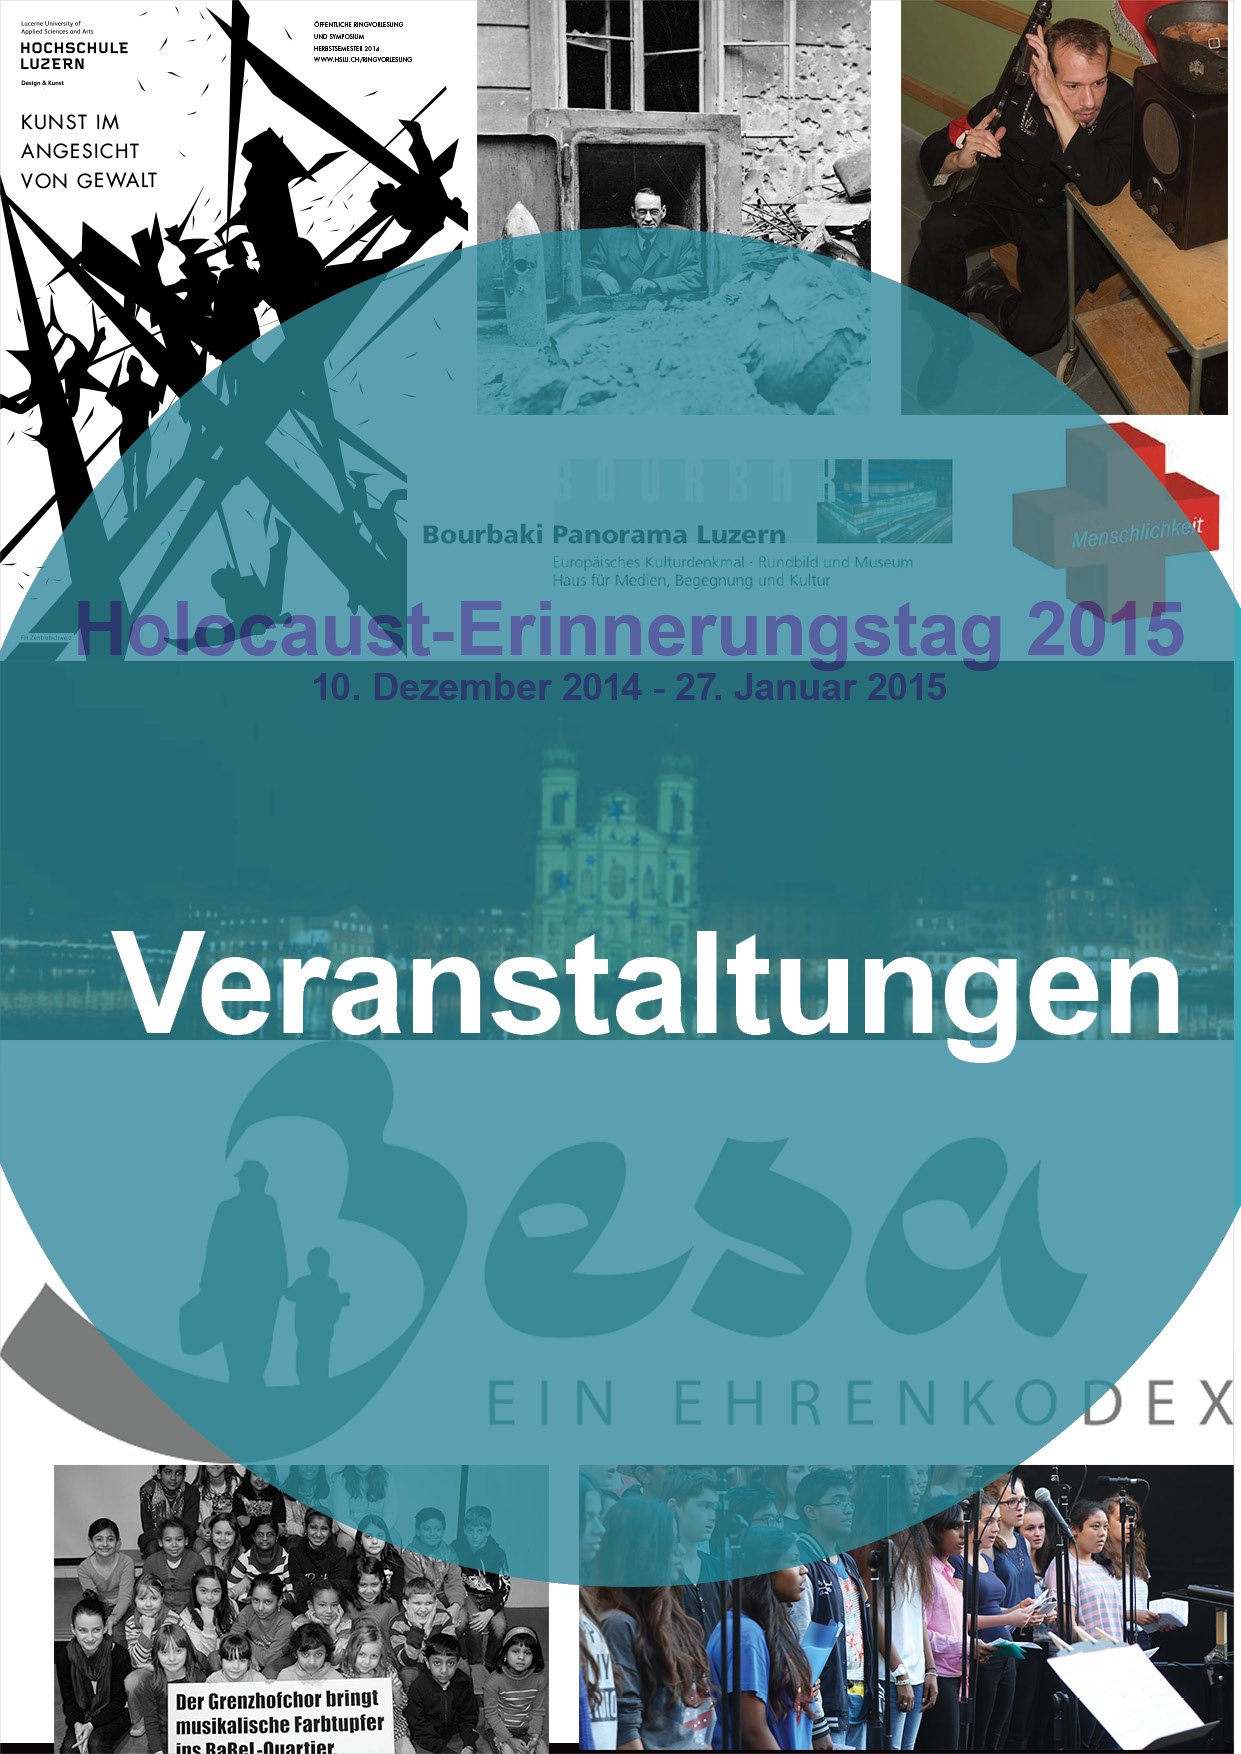 Veranstaltungen Holocaust-Erinnerungstag 2015 web